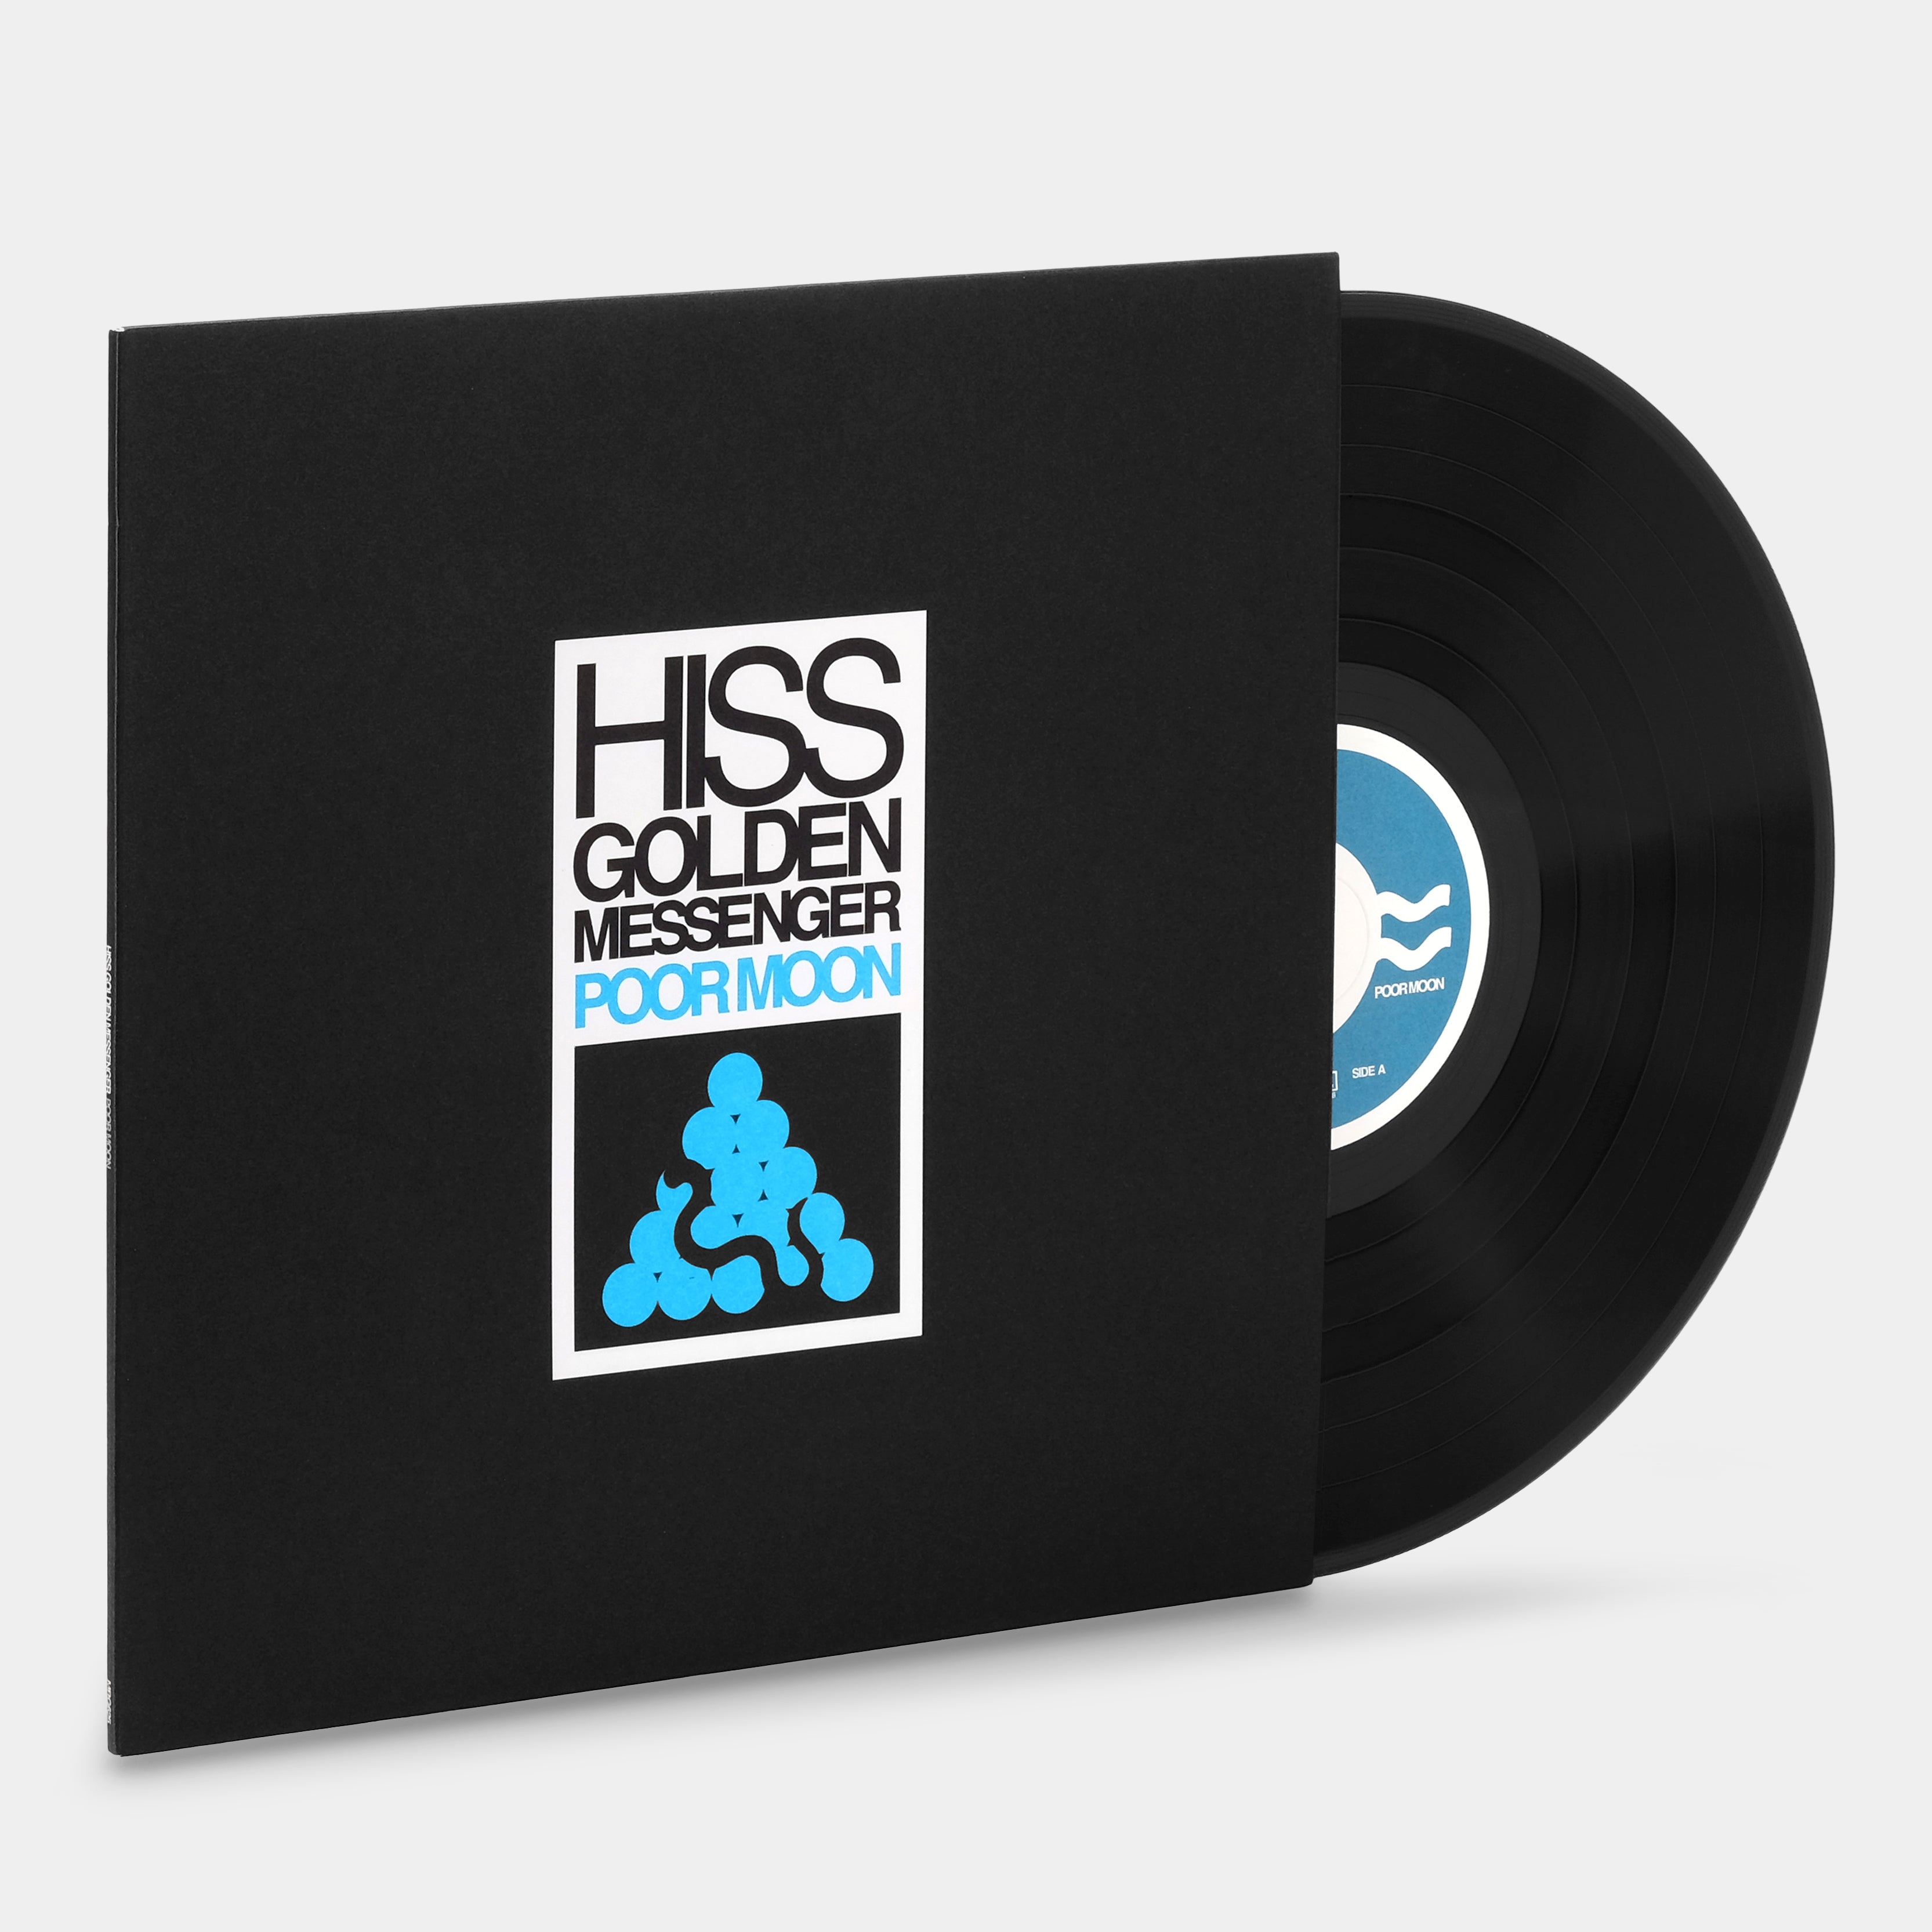 Hiss Golden Messenger - Poor Moon LP Vinyl Record